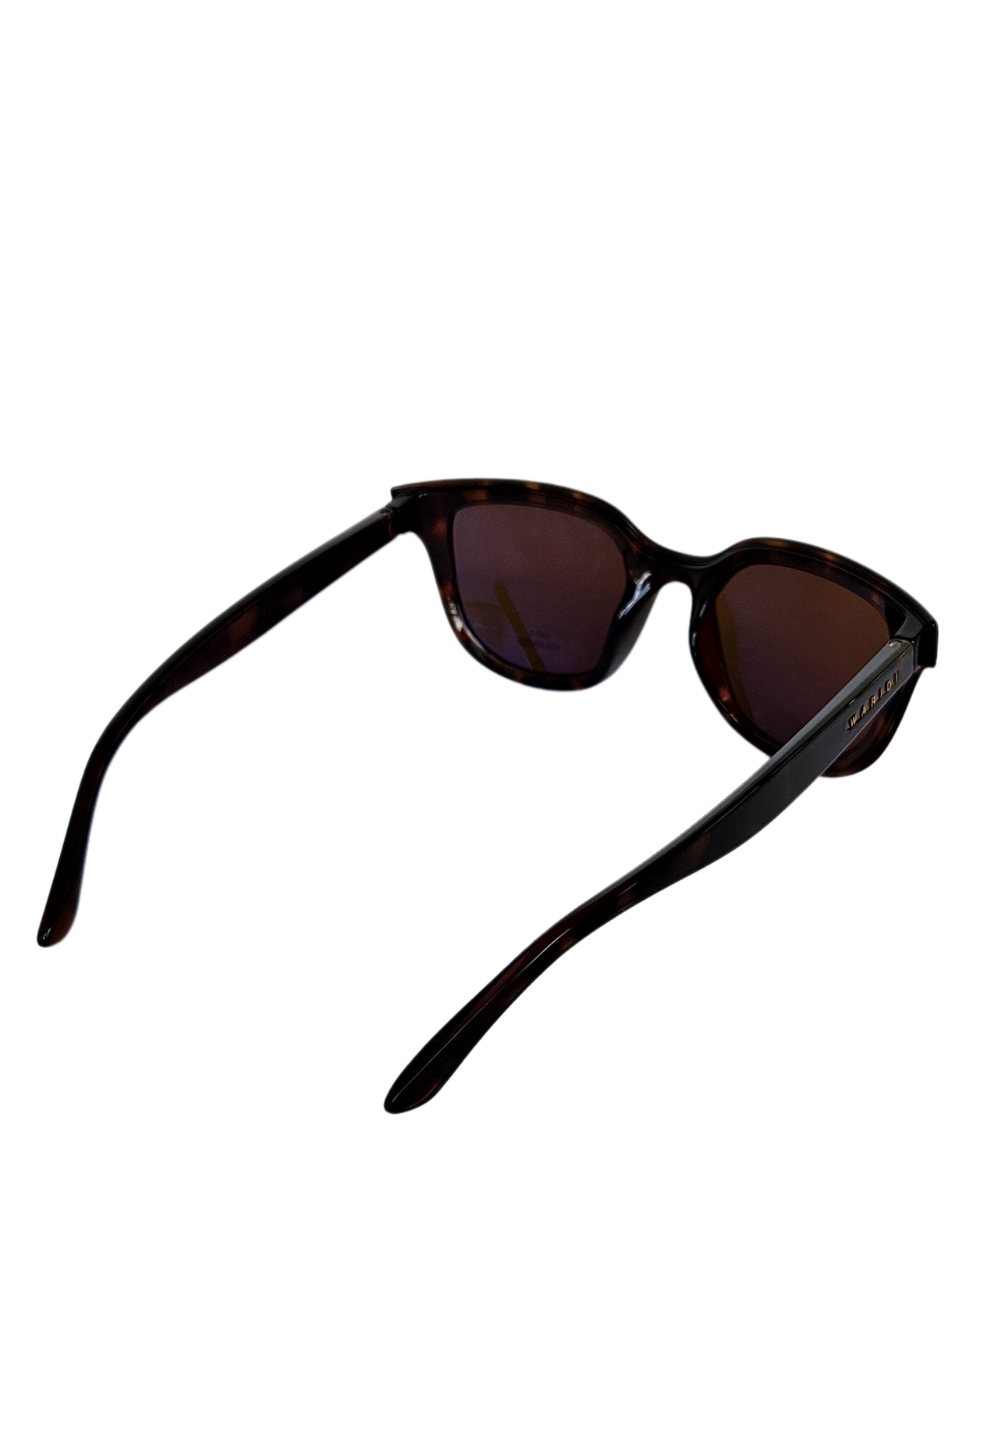 Dahlia sunglasses